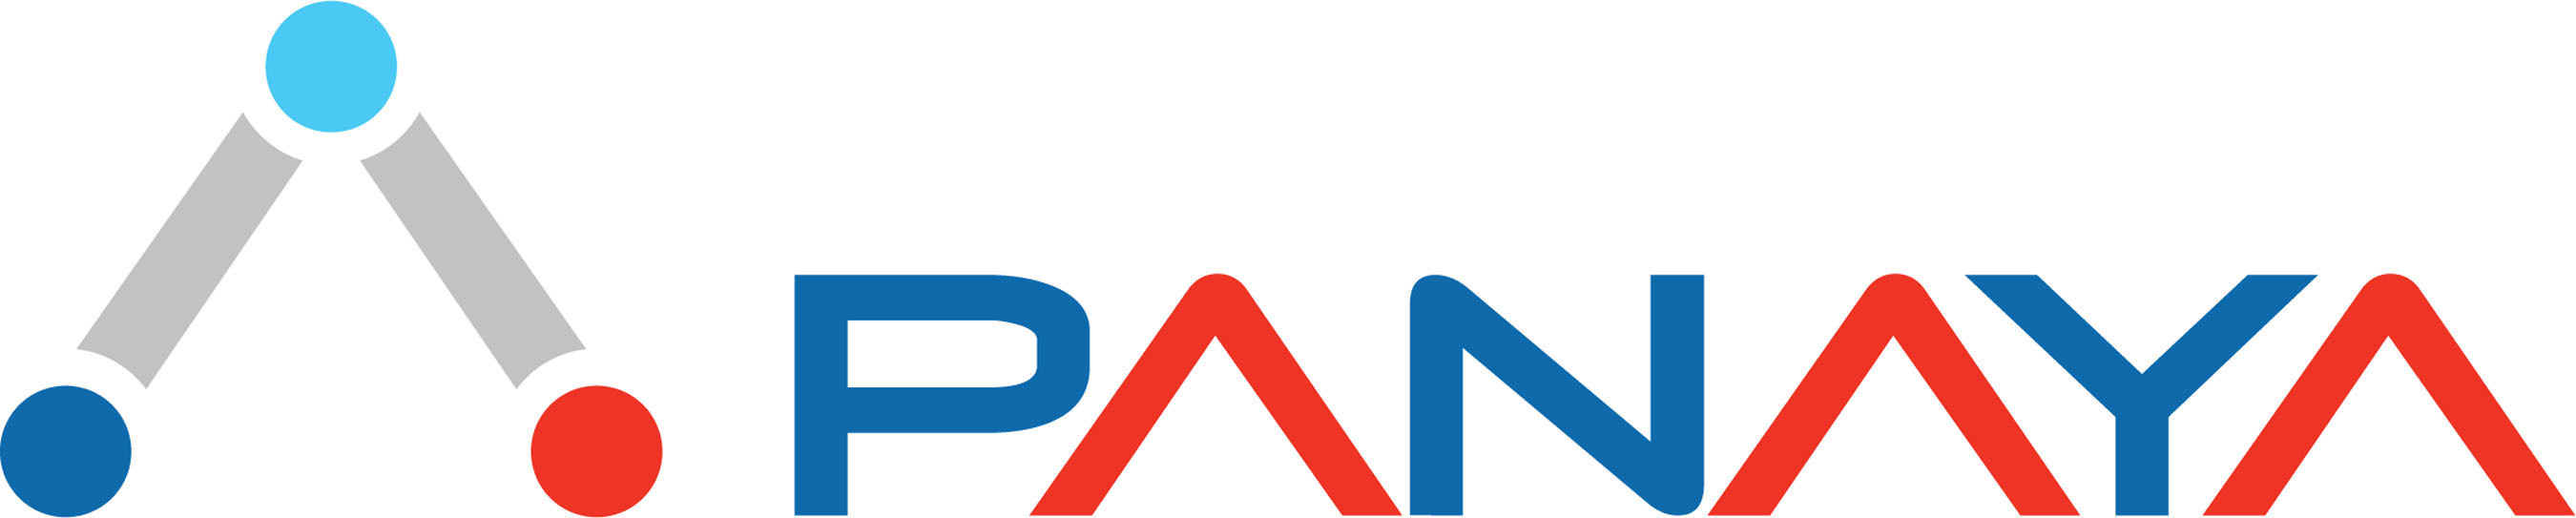 Panaya logo. (PRNewsFoto/Panaya) (PRNewsFoto/PANAYA)